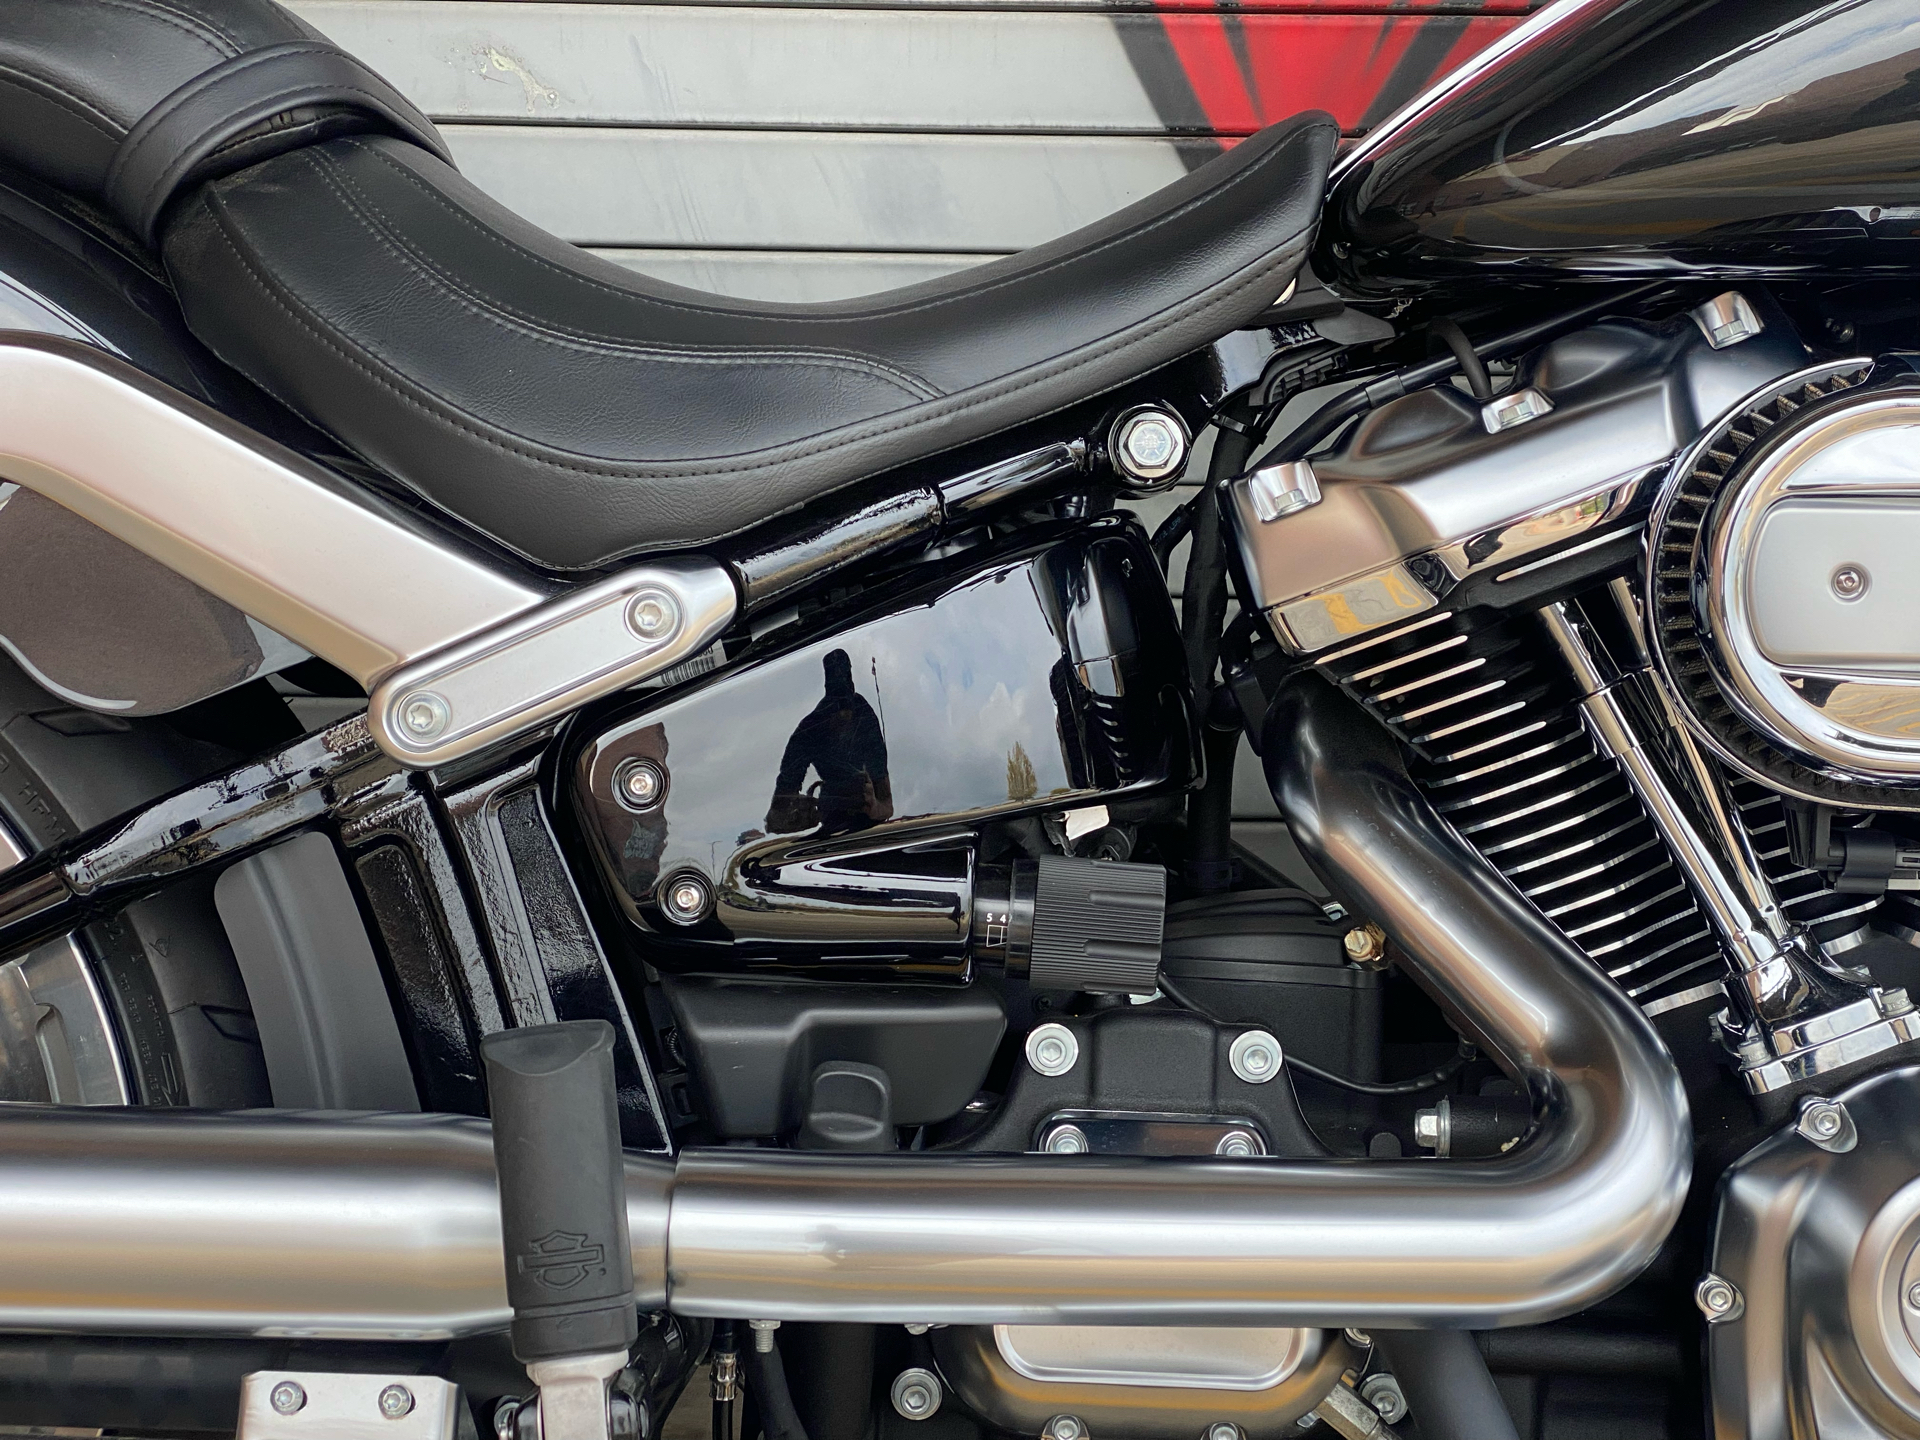 2018 Harley-Davidson Fat Boy® 114 in Carrollton, Texas - Photo 8